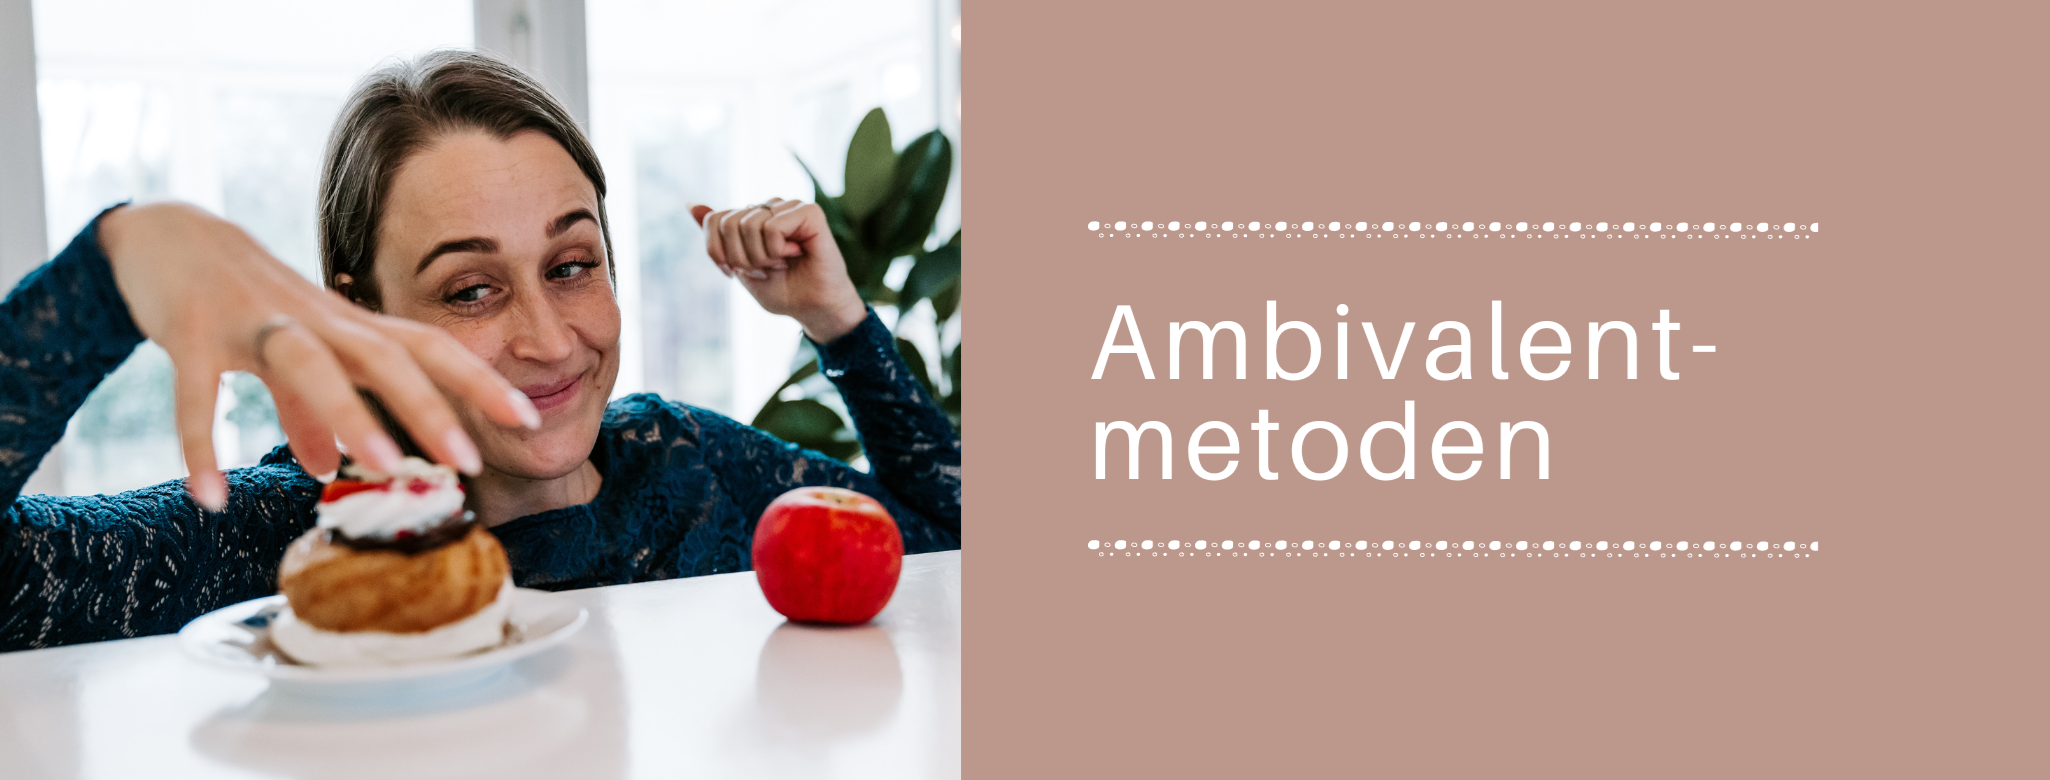 ambivalent- metoden - julie-lykke.dk